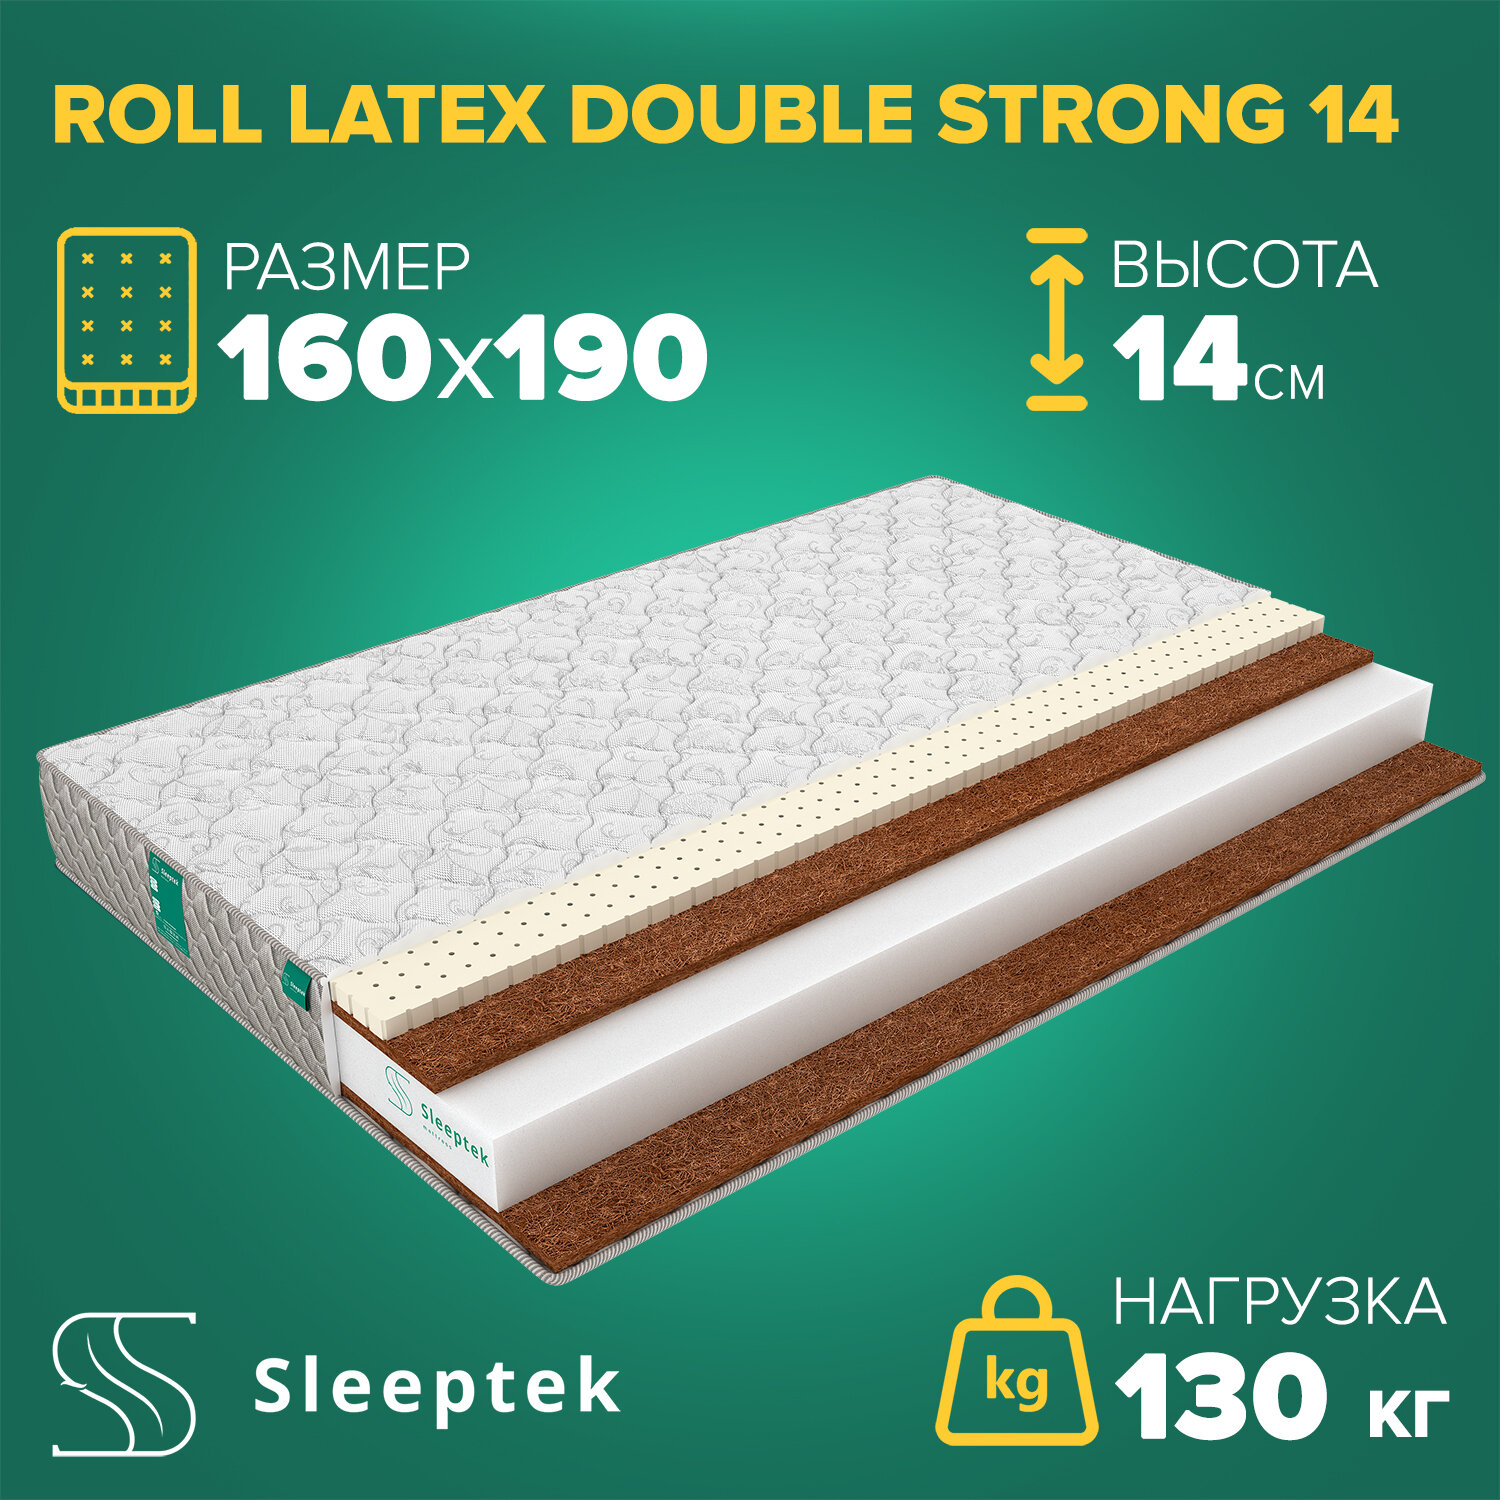 Матрас Sleeptek Roll Latex DoubleStrong 14 160х190